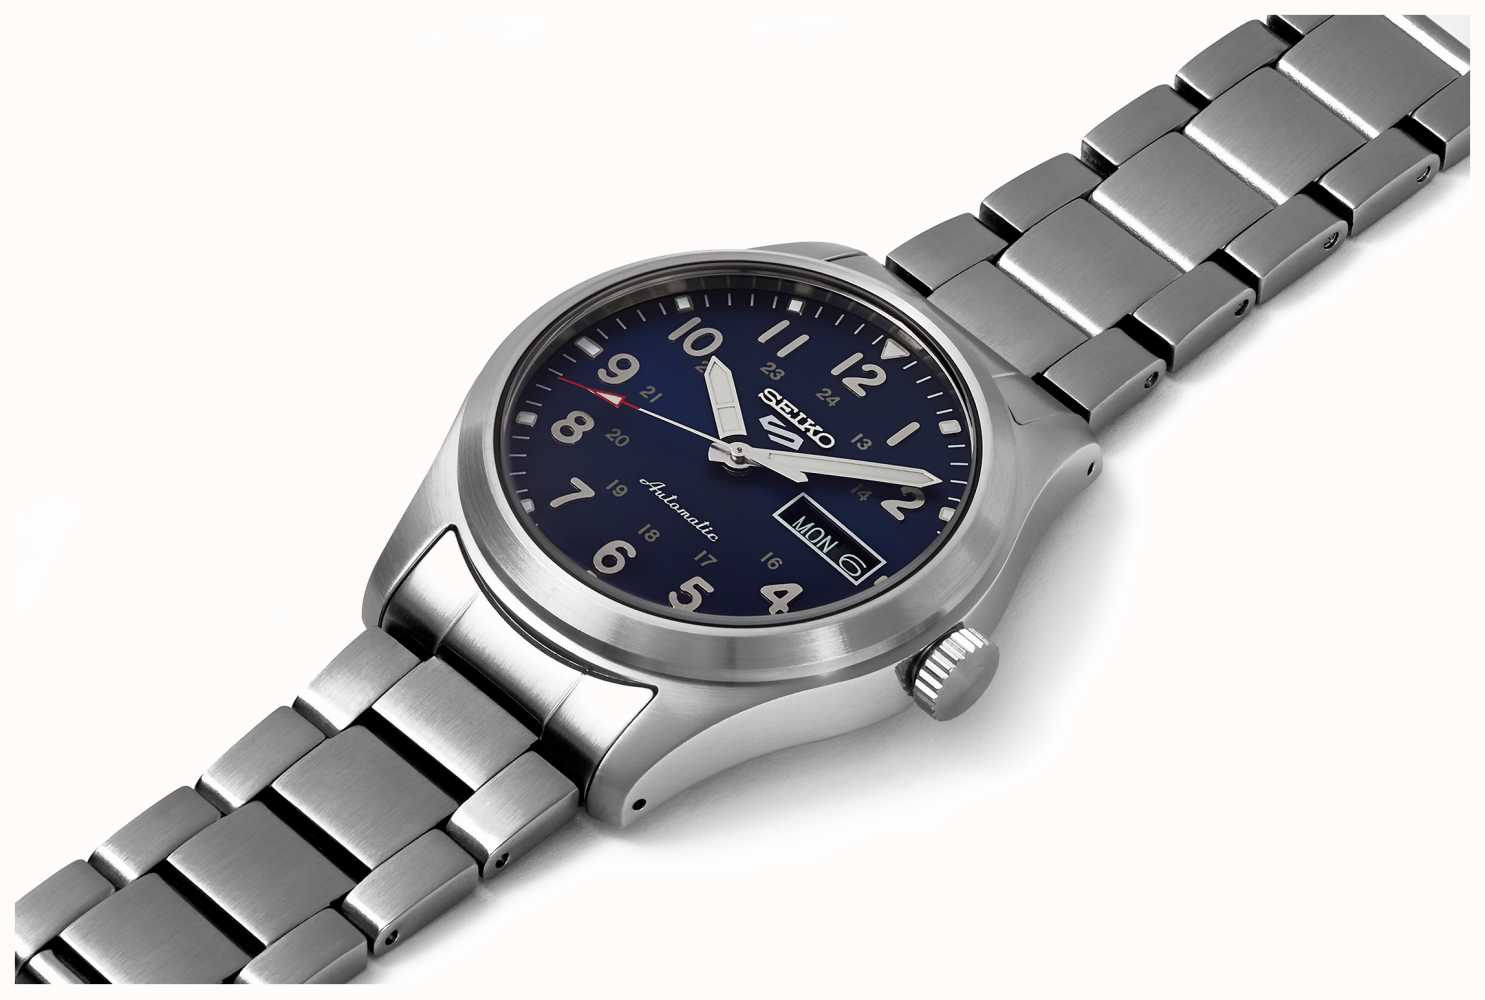 Armband Class First 5 Seiko DEU Watches™ - Zifferblatt Blaues Edelstahl Sportplatz SRPG29K1